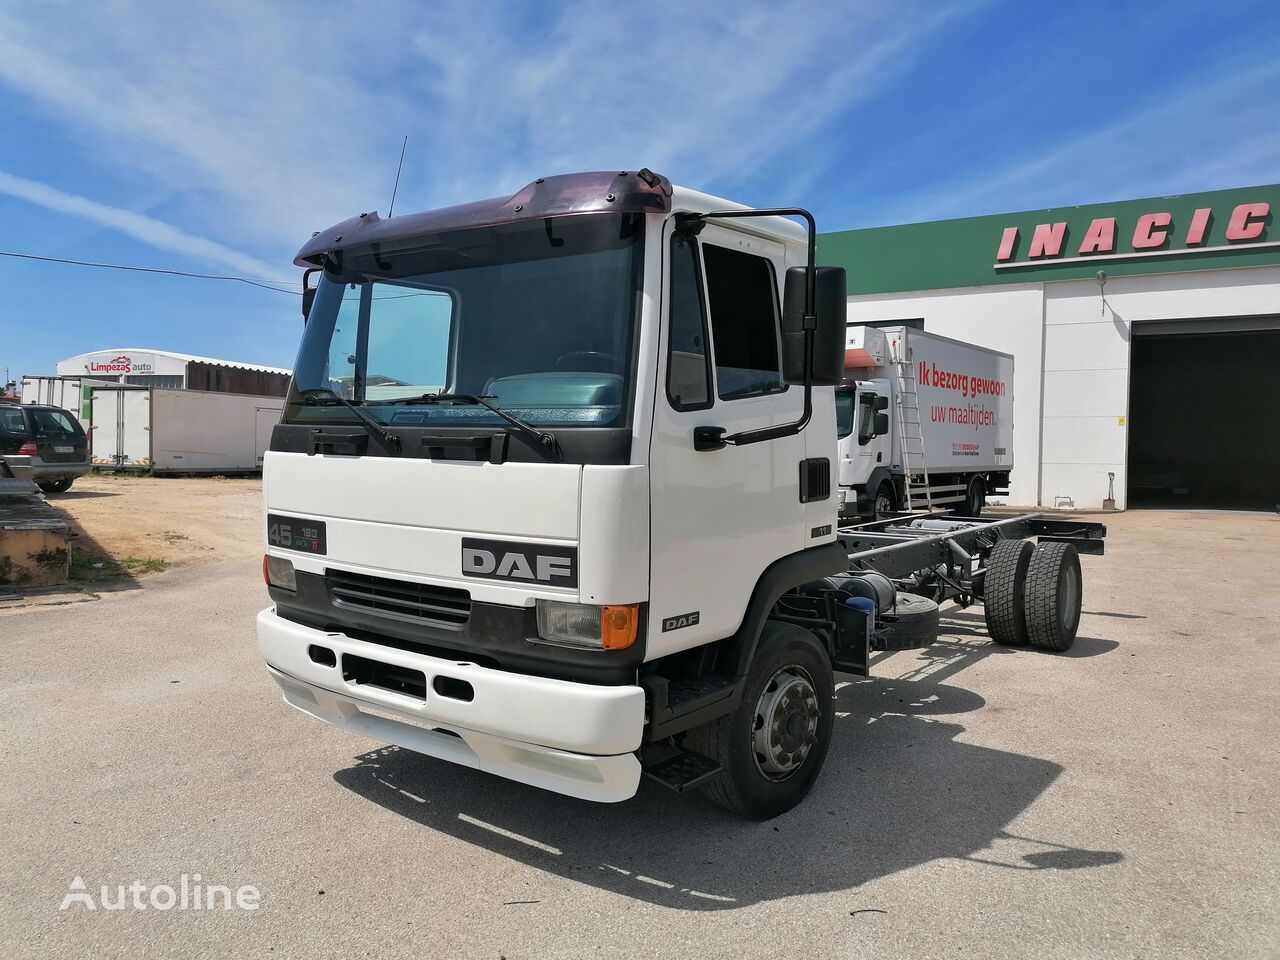 nákladní vozidlo podvozek DAF FA45180